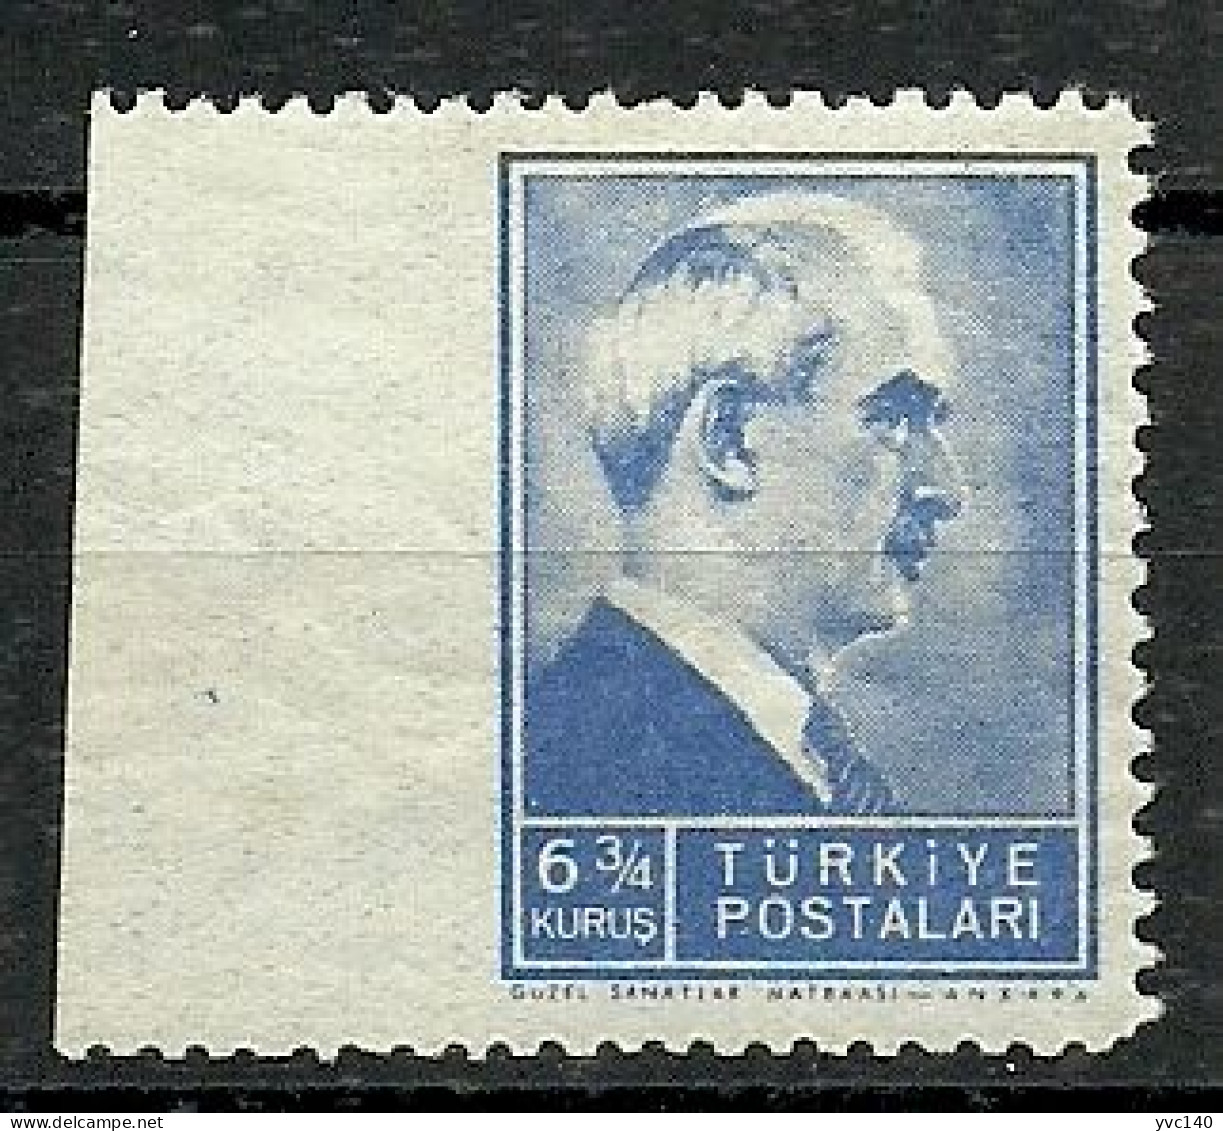 Turkey; 1942 1st Inonu Issue 6 3/4 K. ERROR "Imperf. Edge" - Unused Stamps